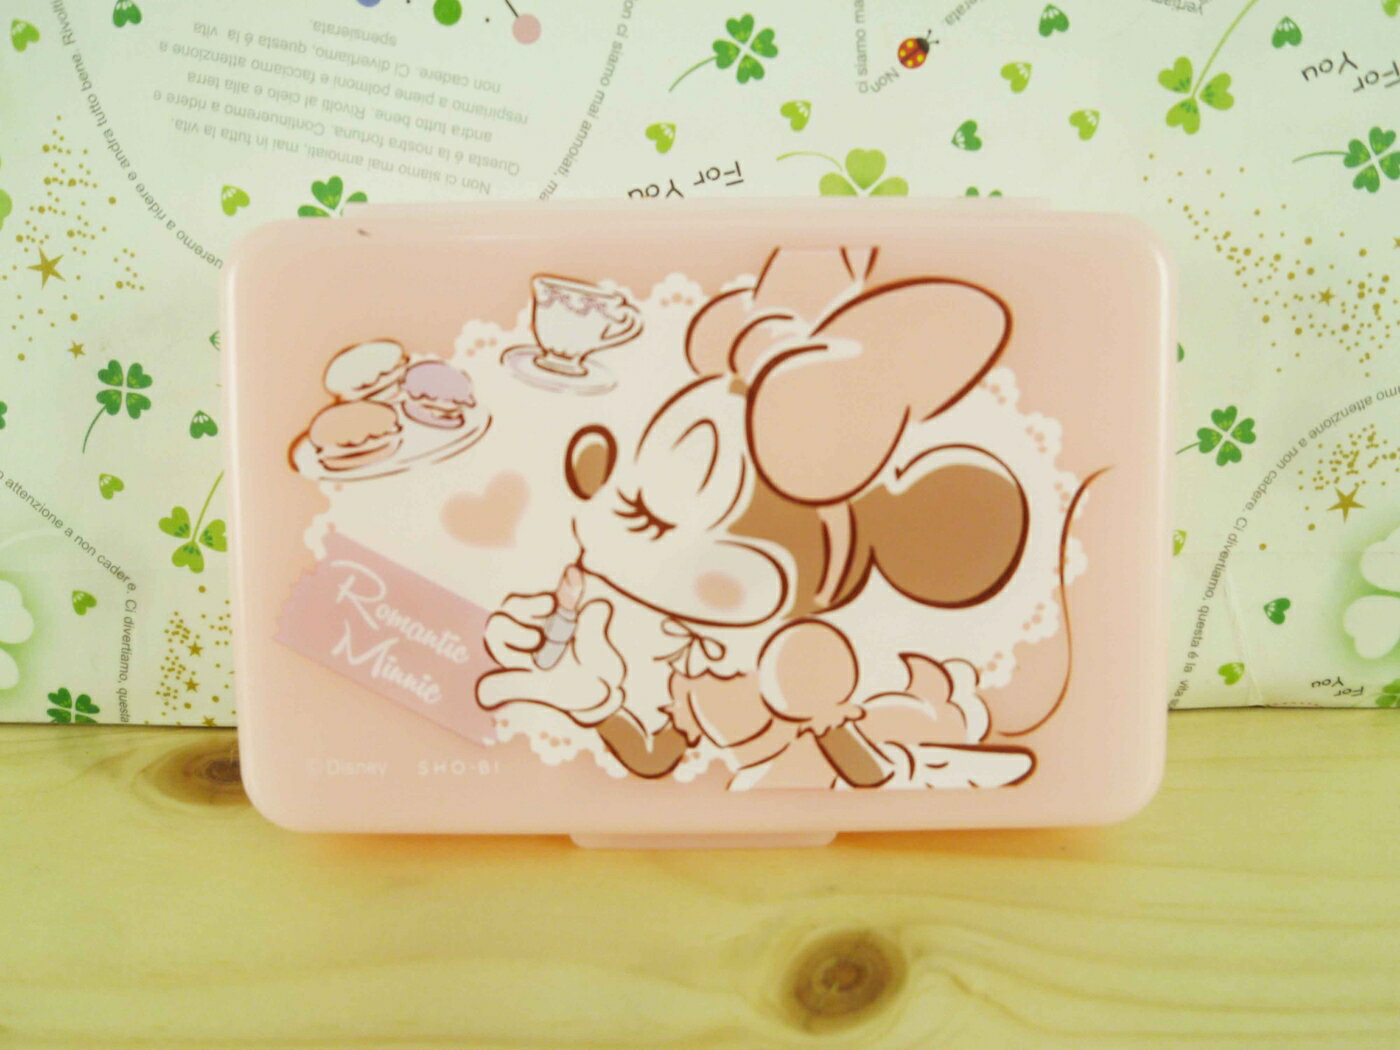 【震撼精品百貨】Micky Mouse 米奇/米妮 6格盒-粉米妮 震撼日式精品百貨